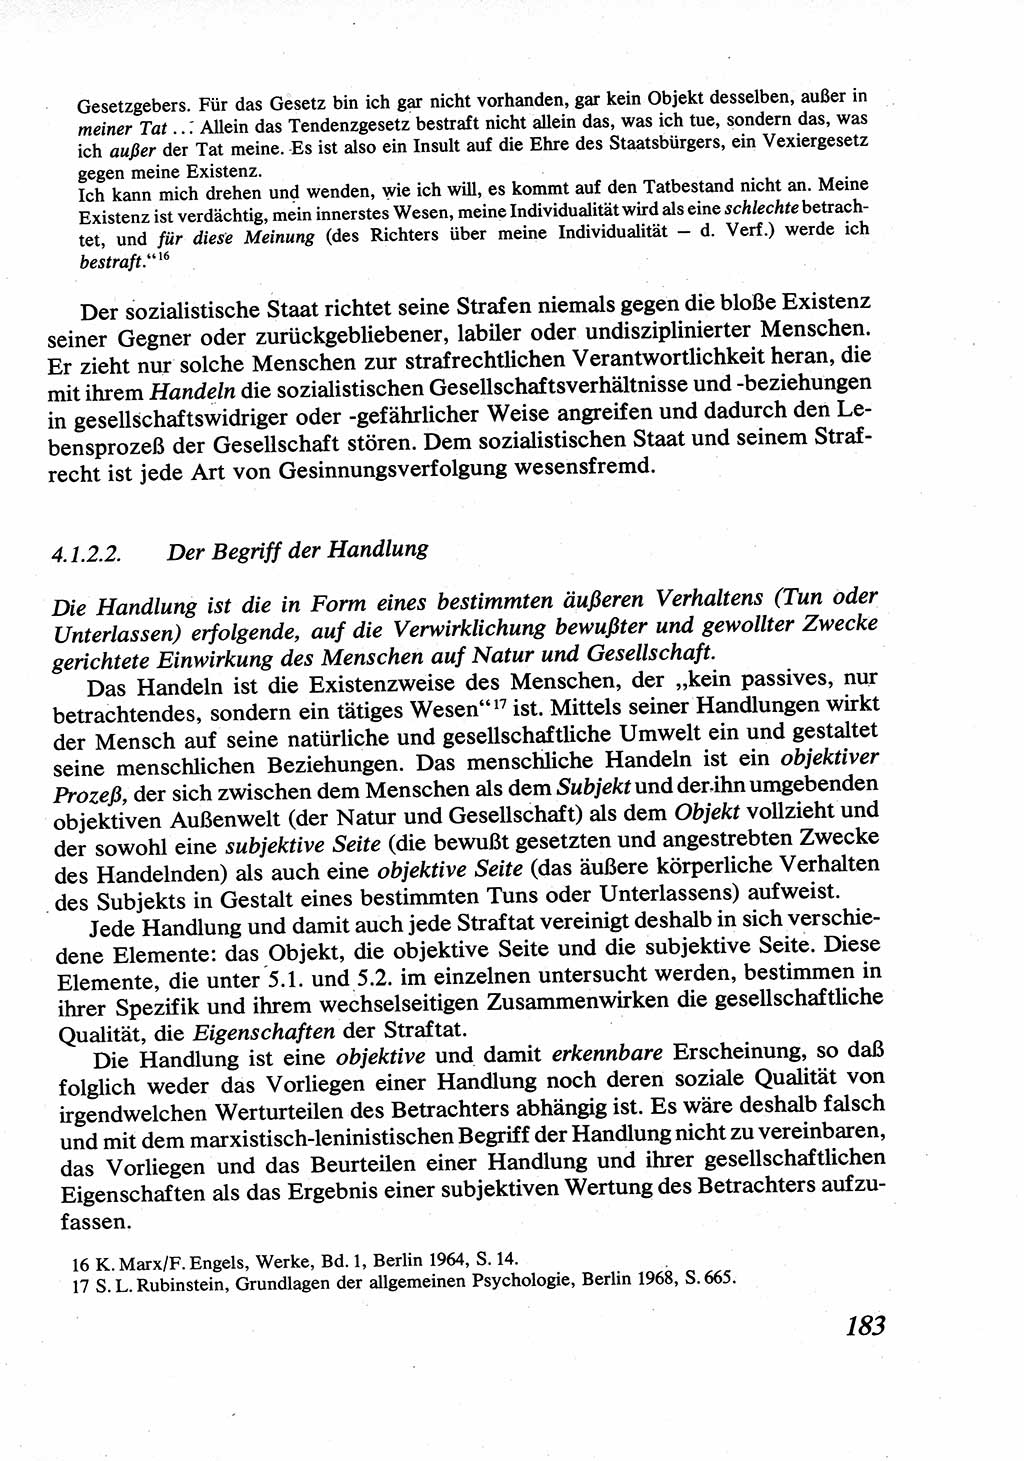 Strafrecht [Deutsche Demokratische Republik (DDR)], Allgemeiner Teil, Lehrbuch 1976, Seite 183 (Strafr. DDR AT Lb. 1976, S. 183)